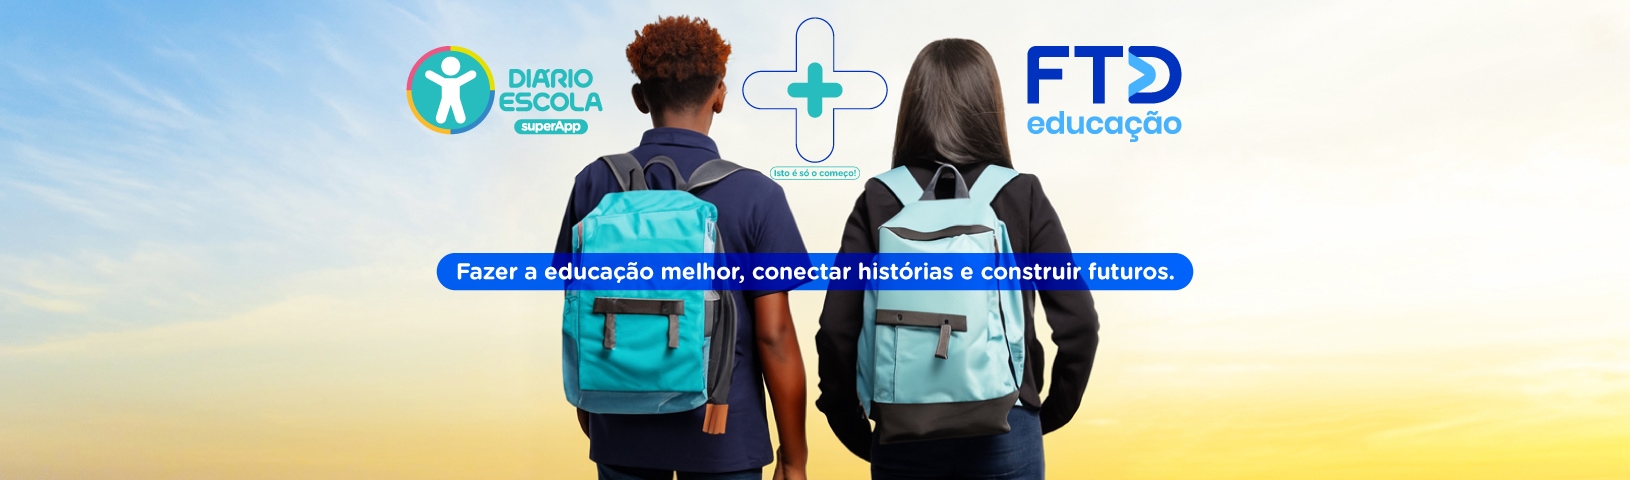 FTD Educação + superApp Diário Escola